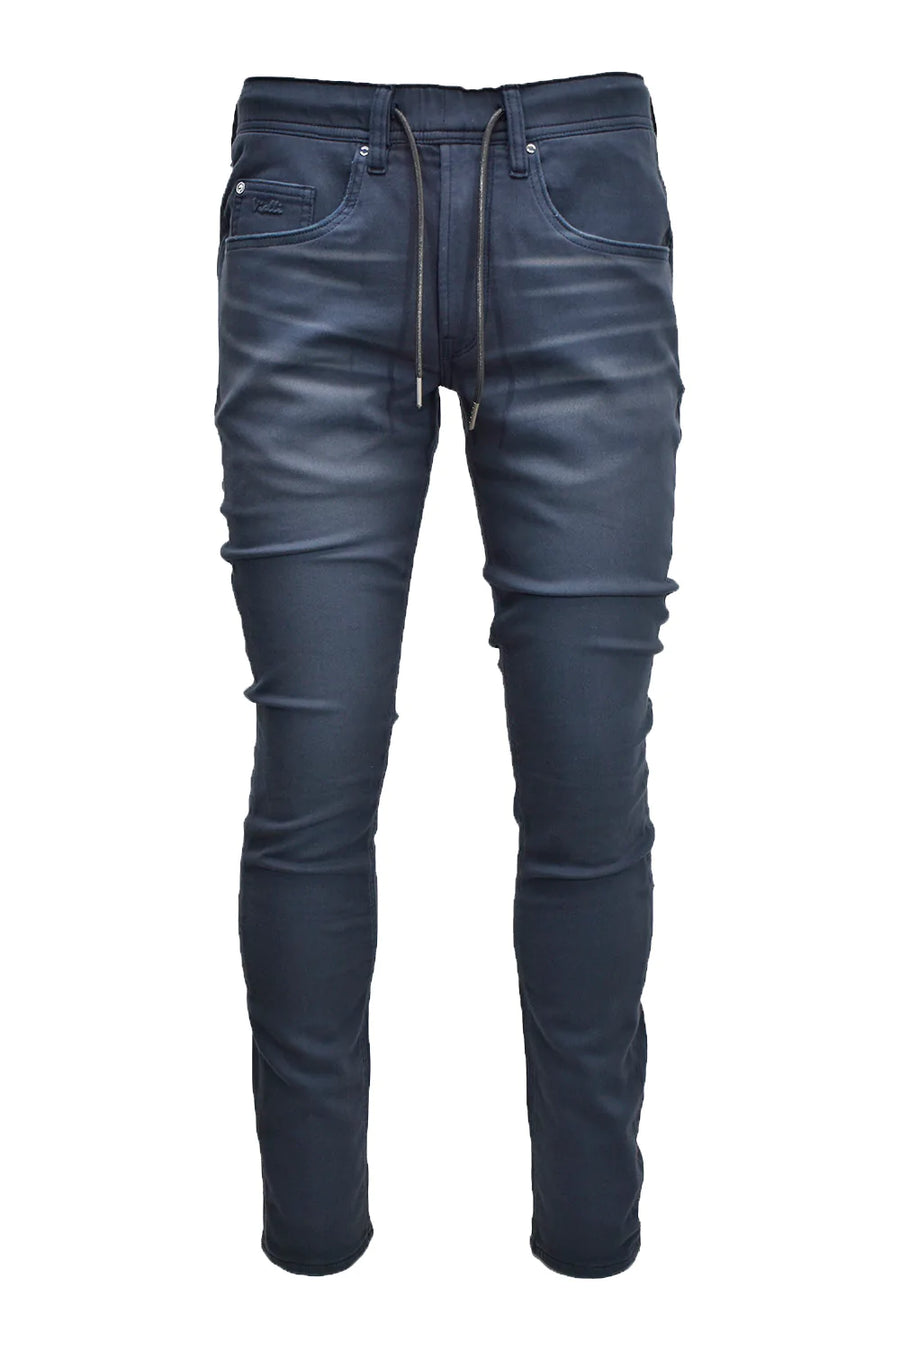 Modoro Strato-Fit Jeans*